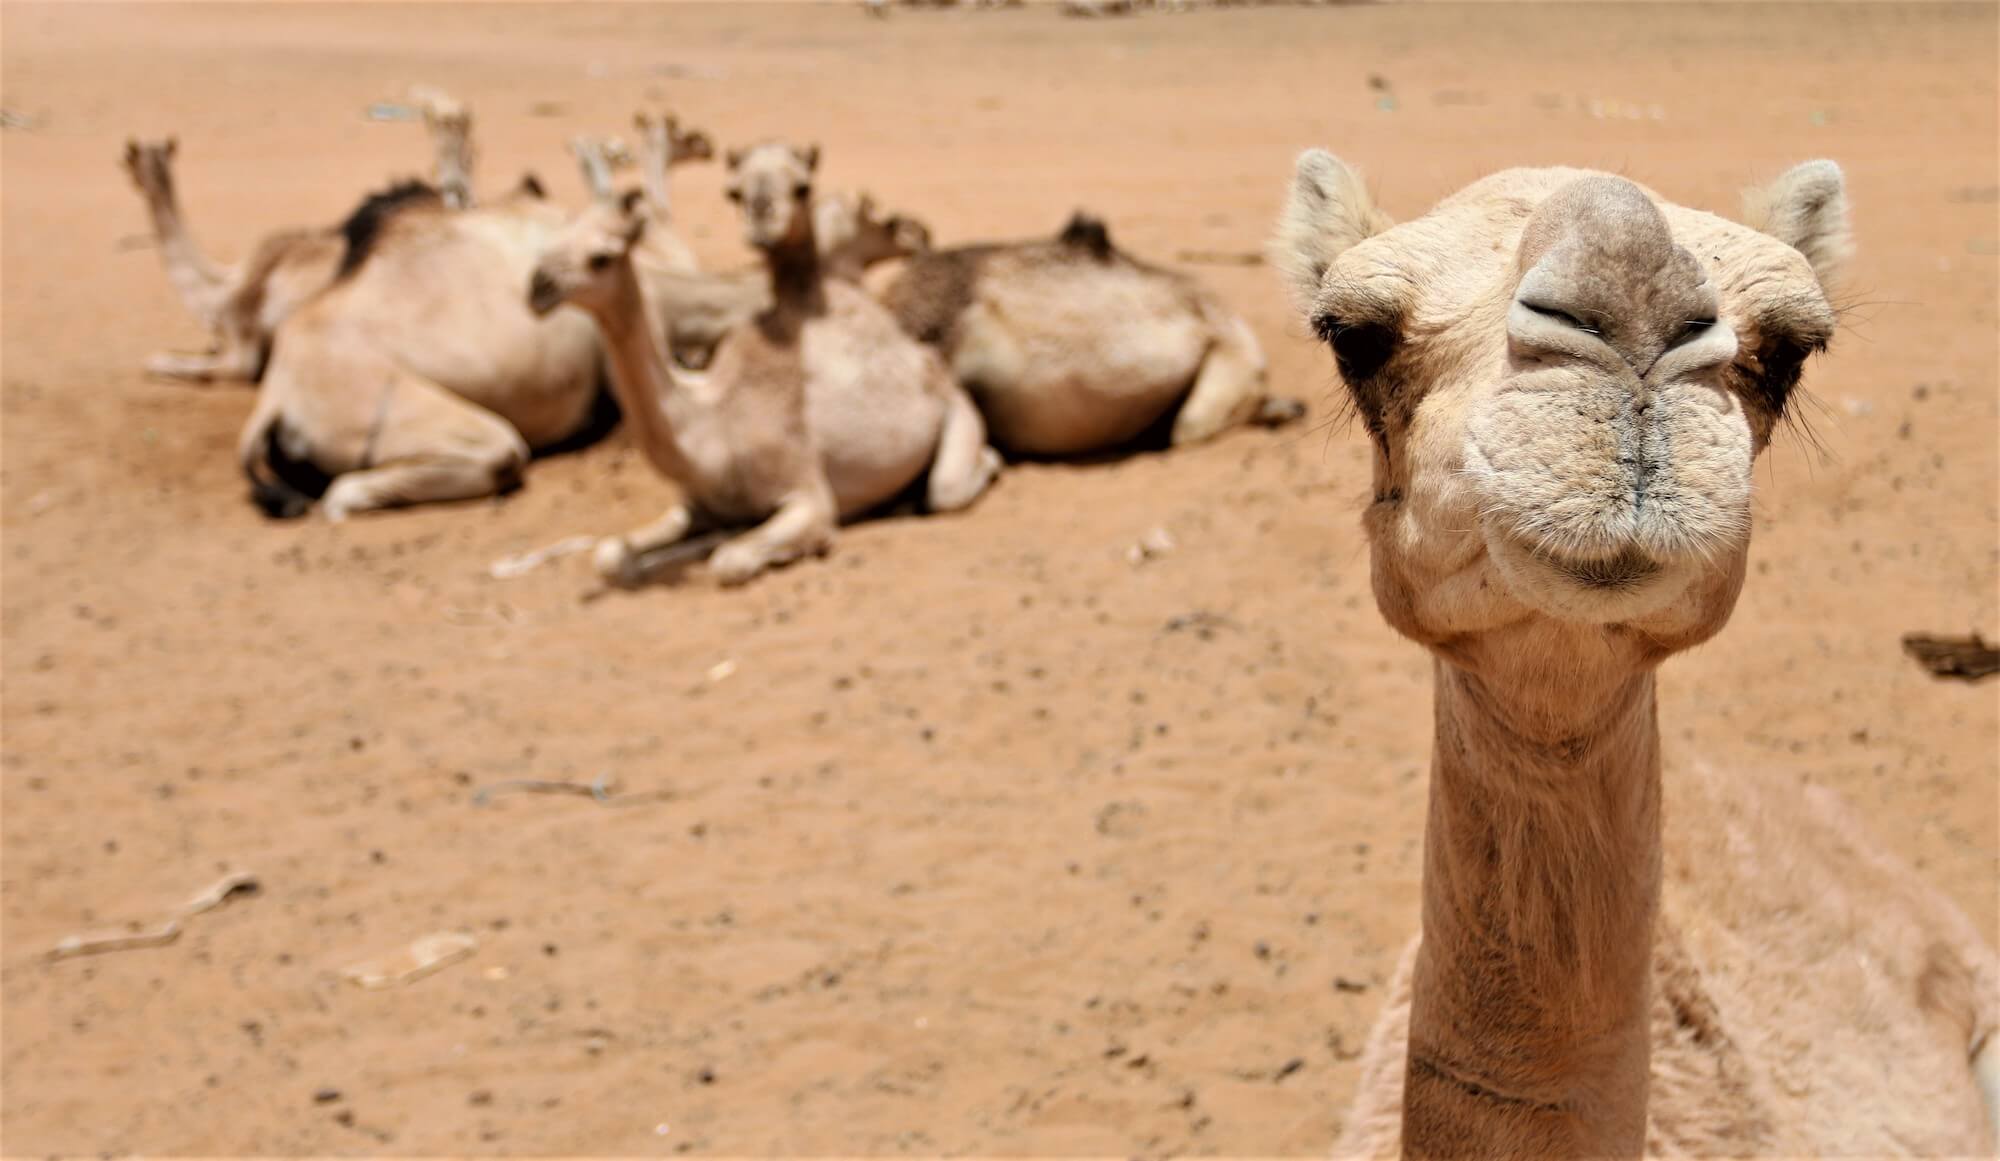 camels in sudan - Arkel ambassador, Rebecca lowe in Africa